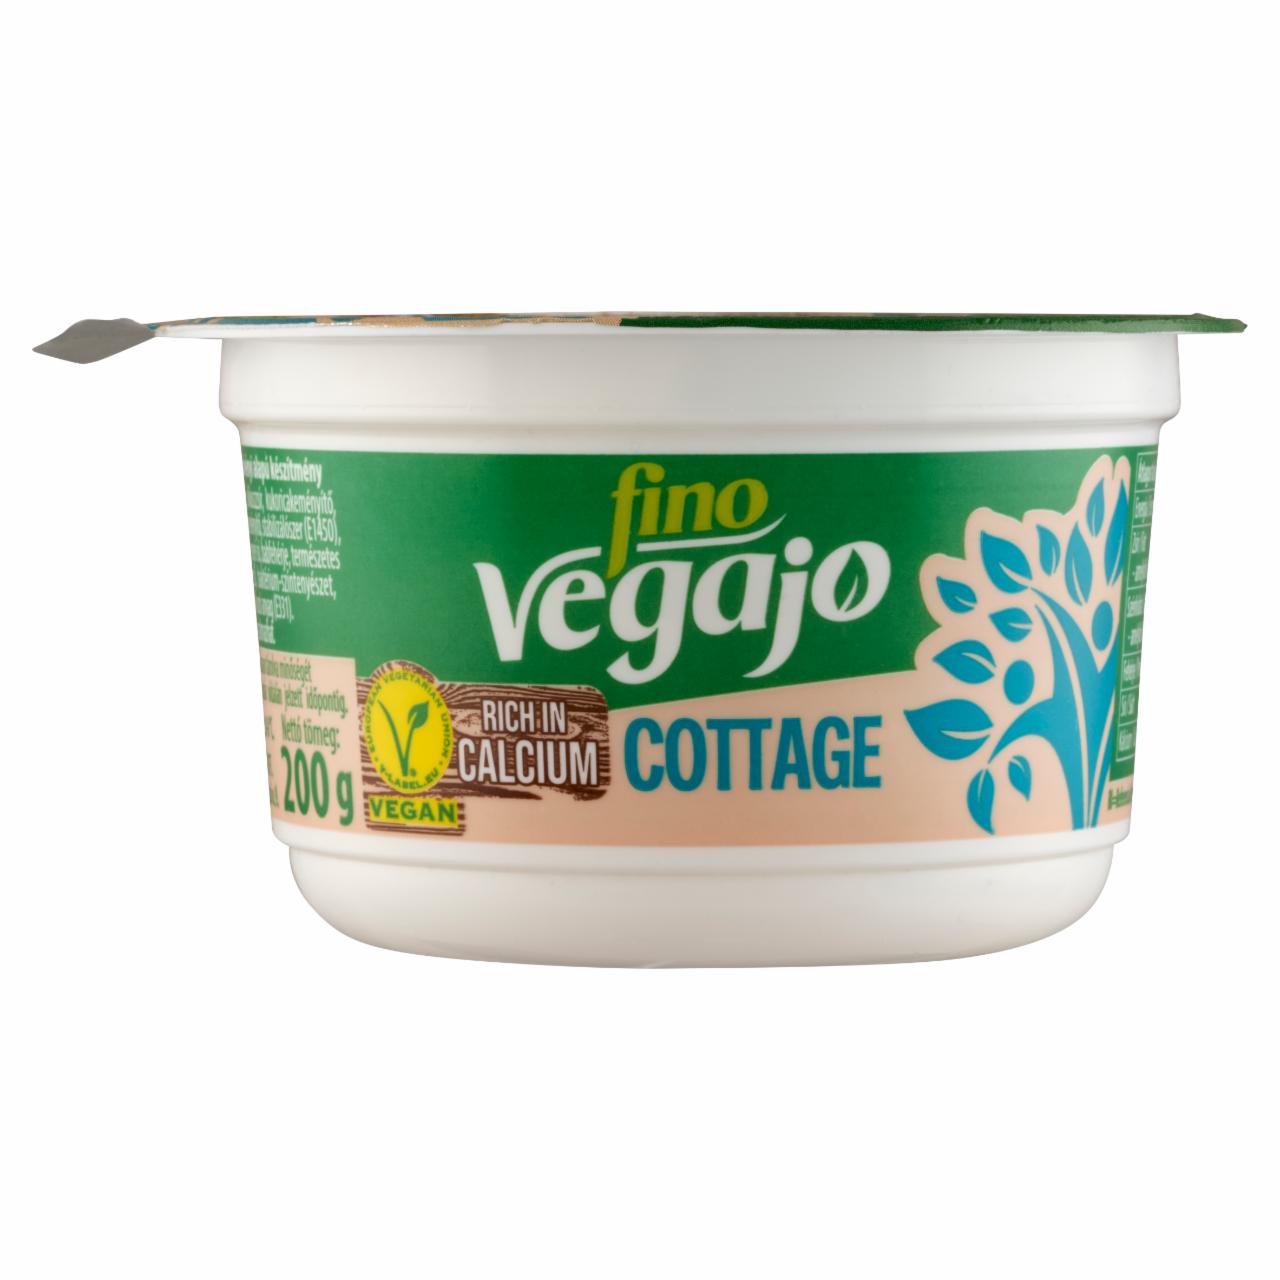 Képek - Fino VegaJó Cottage növényi alapú készítmény 200 g